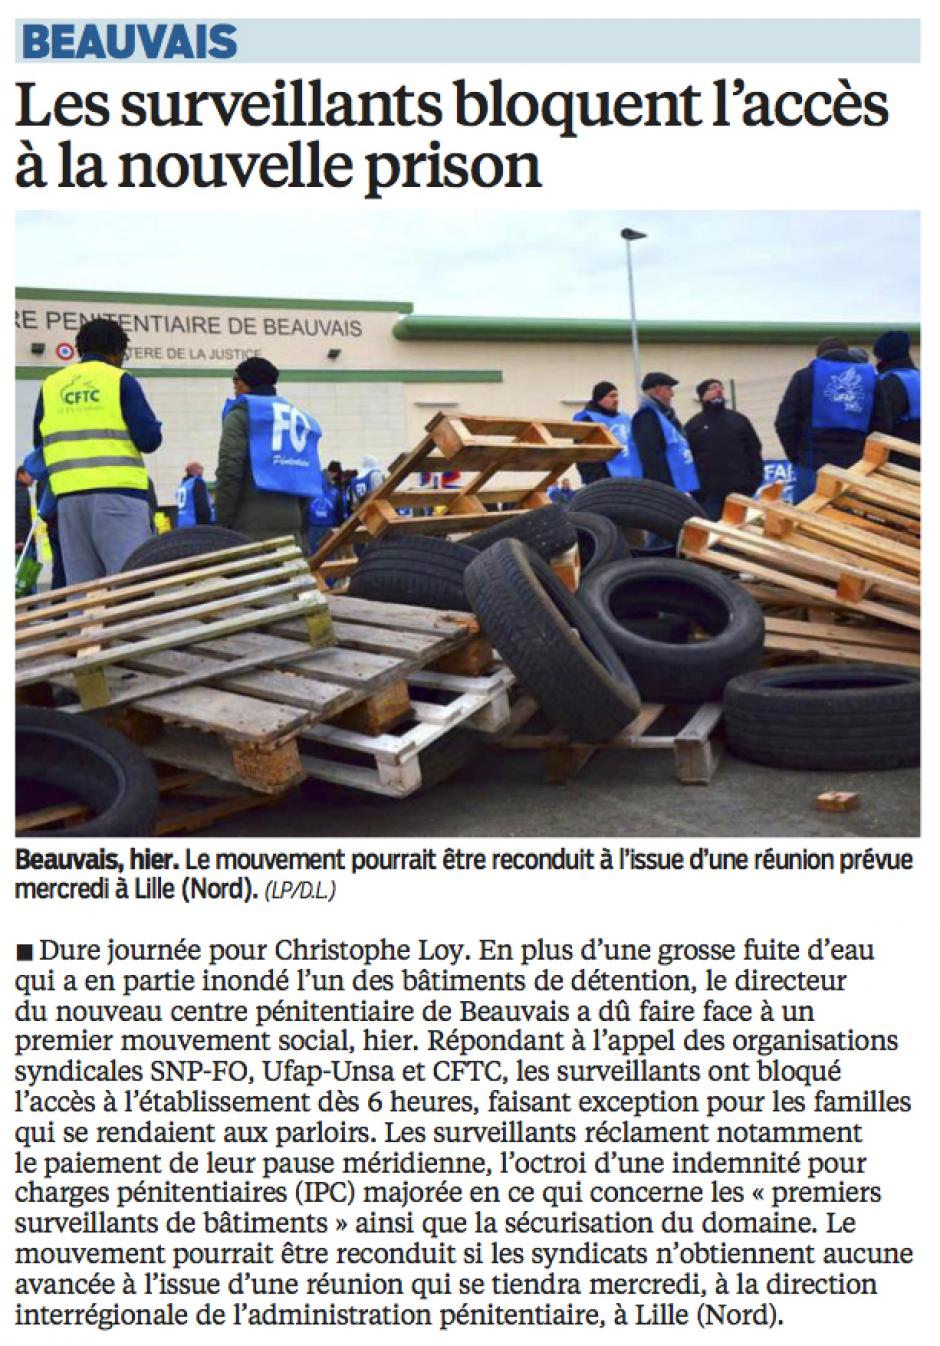 20160227-LeP-Beauvais-Les surveillants bloquent l'accès à la nouvelle prison